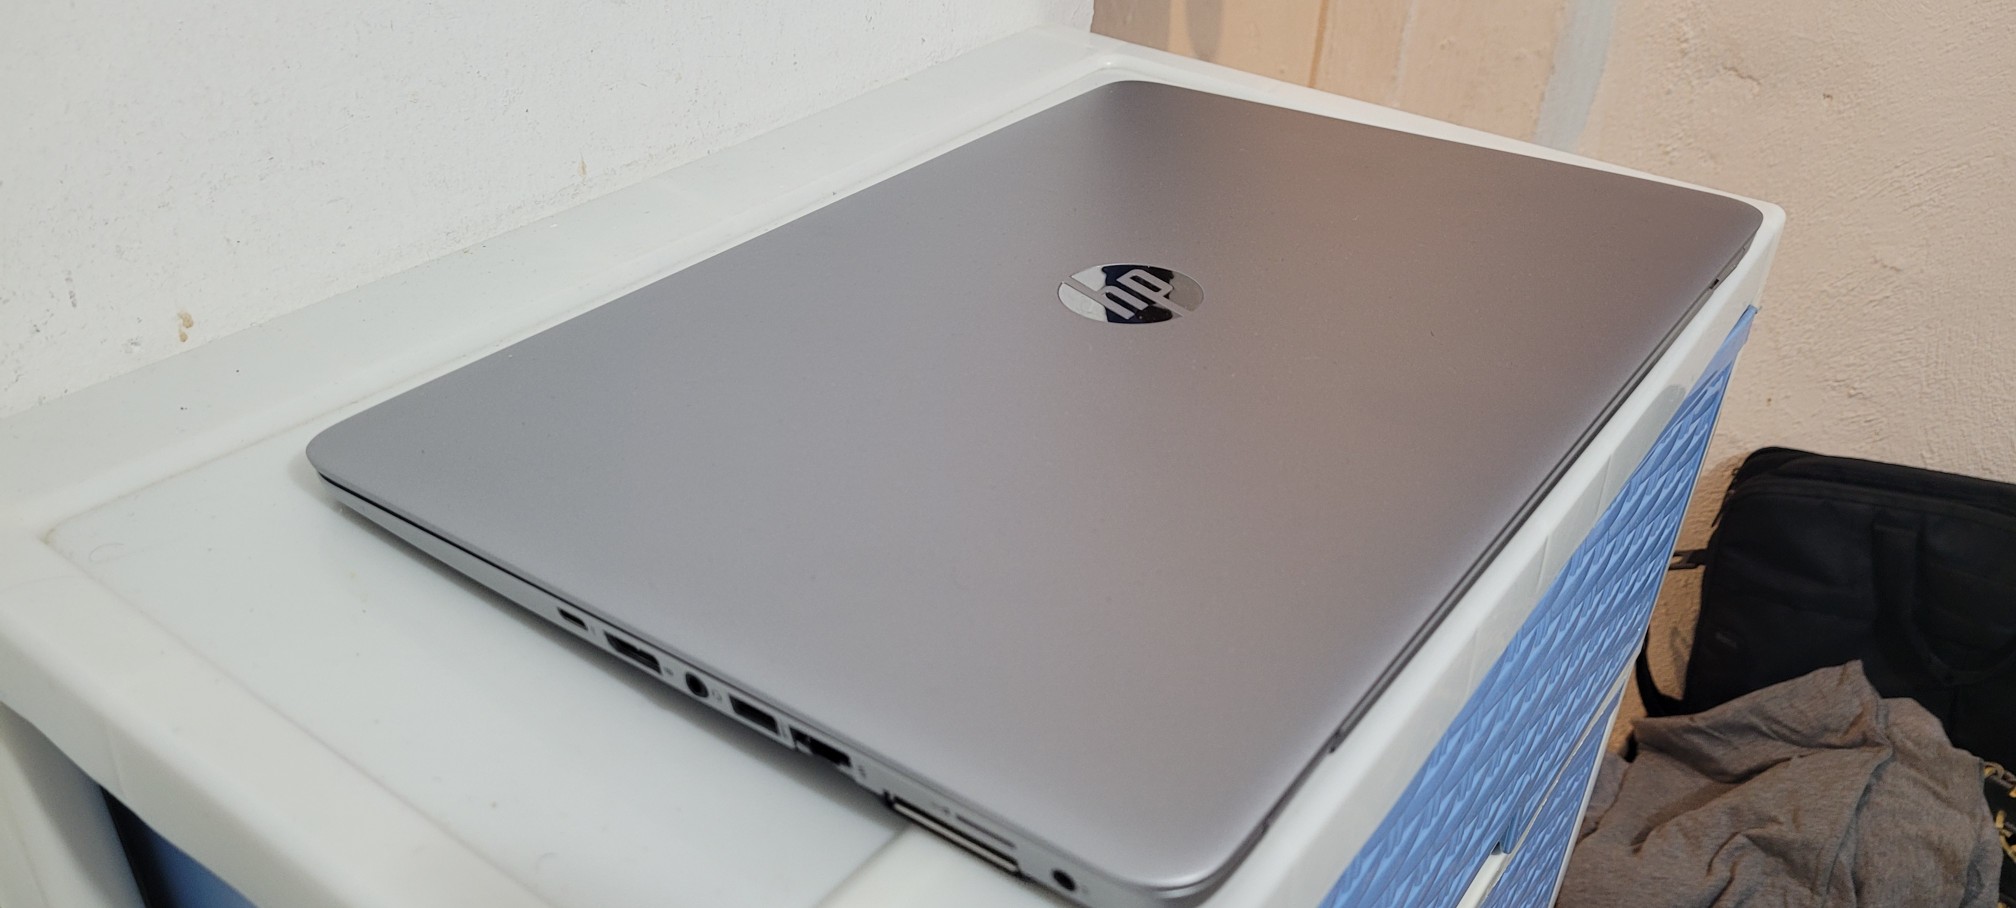 computadoras y laptops - Laptop hp Slim G3 14 Pulg Core i5 6ta Gen Ram 8gb ddr4 Disco 500gb Full 2